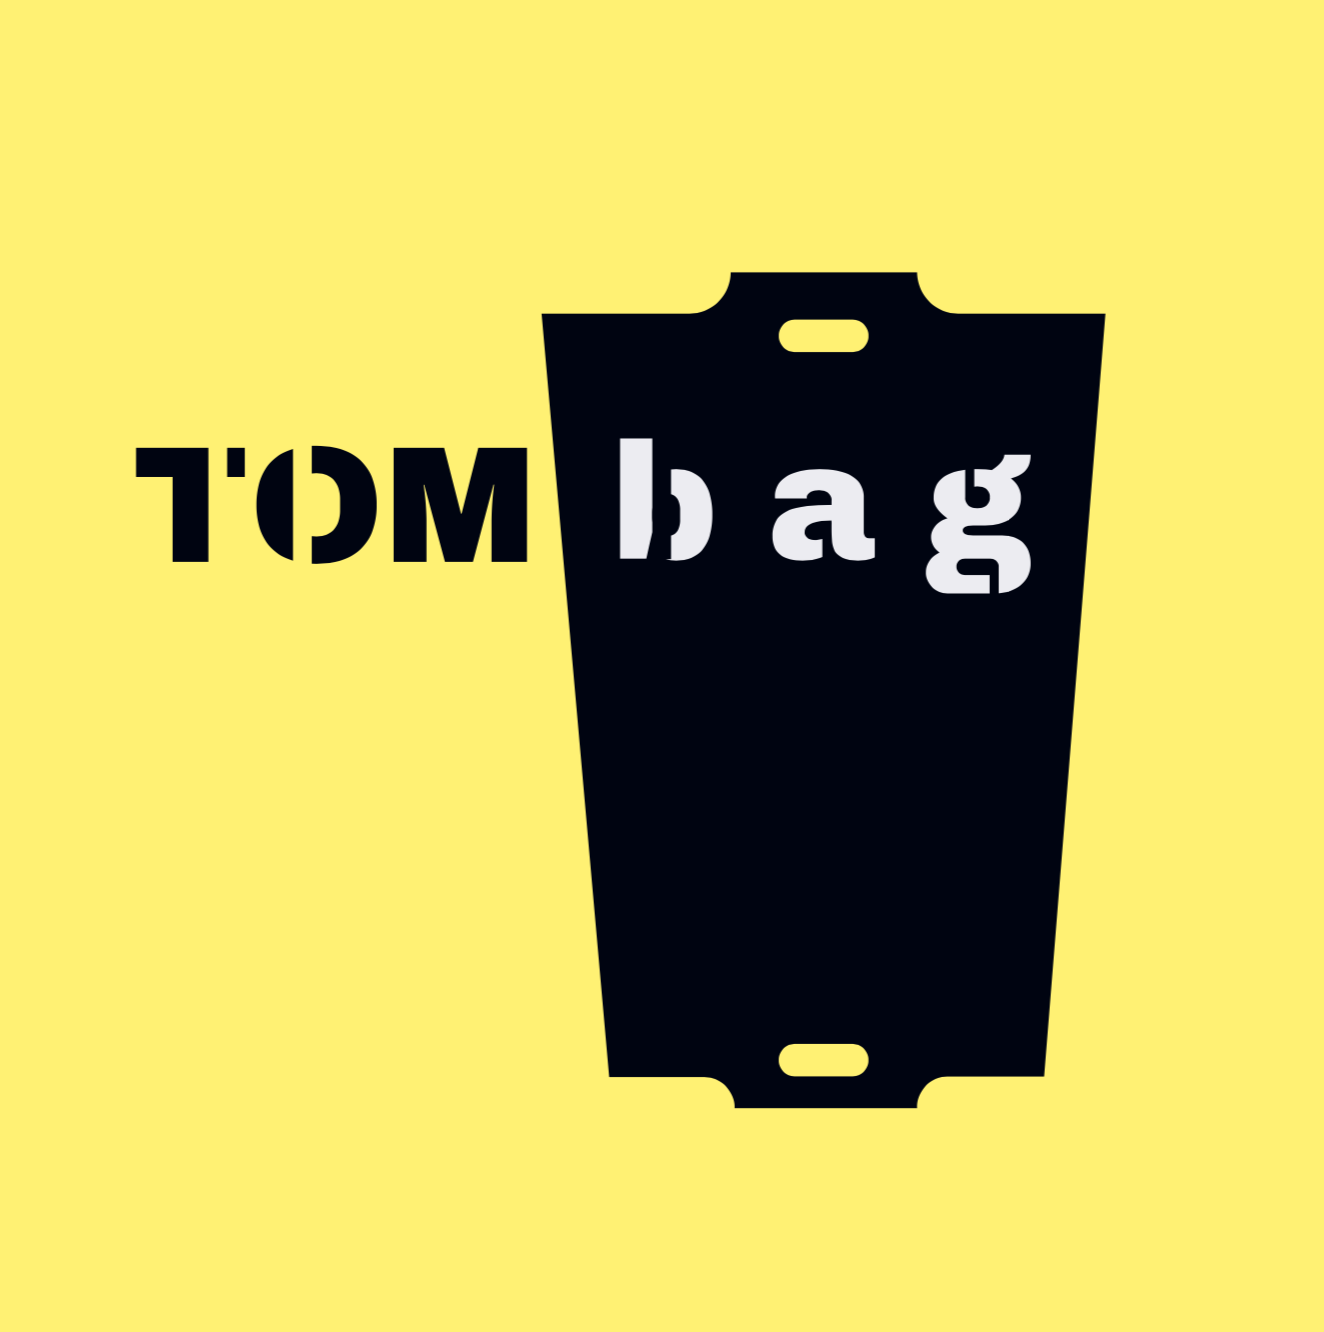 Tom bag